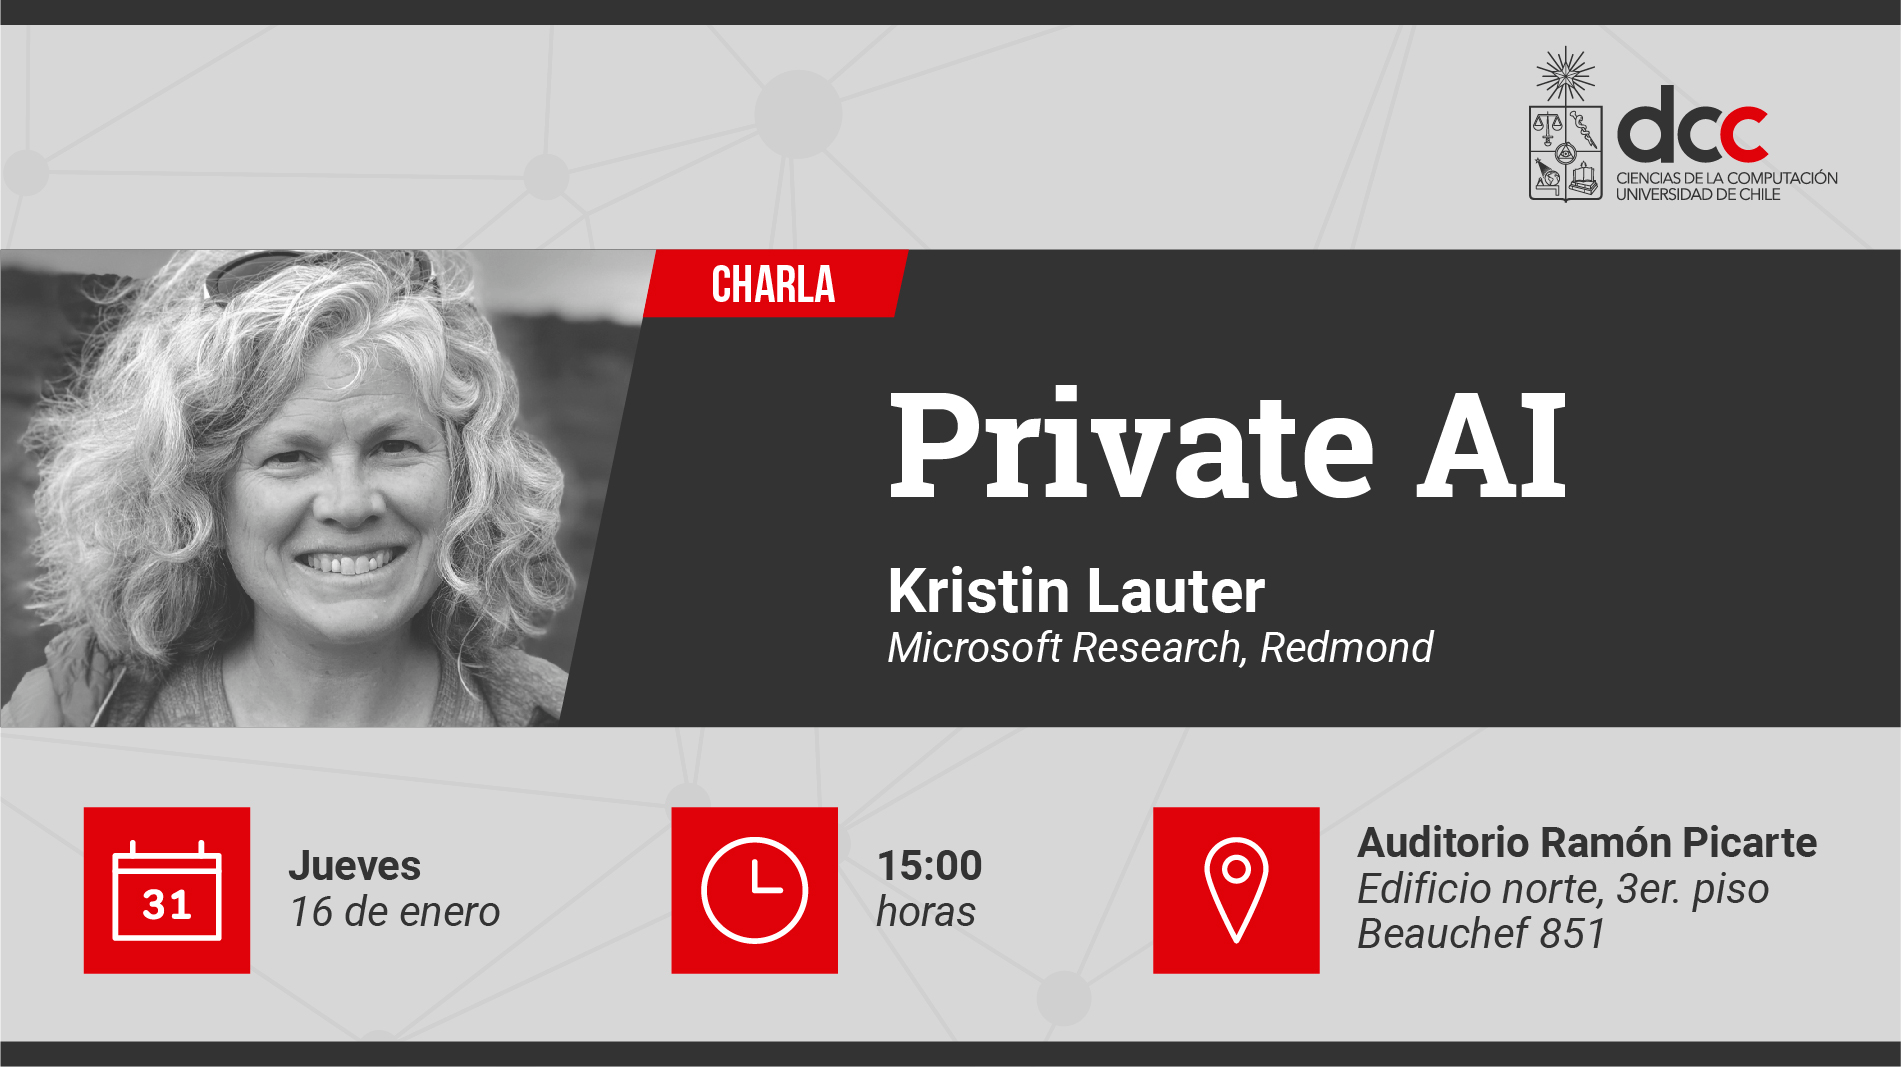 Te invitamos a la charla: "Private AI" que dictará Kristin Lauter (Microsoft Research) / 16 de enero - 15:00 hrs. - Auditorio Picarte DCC